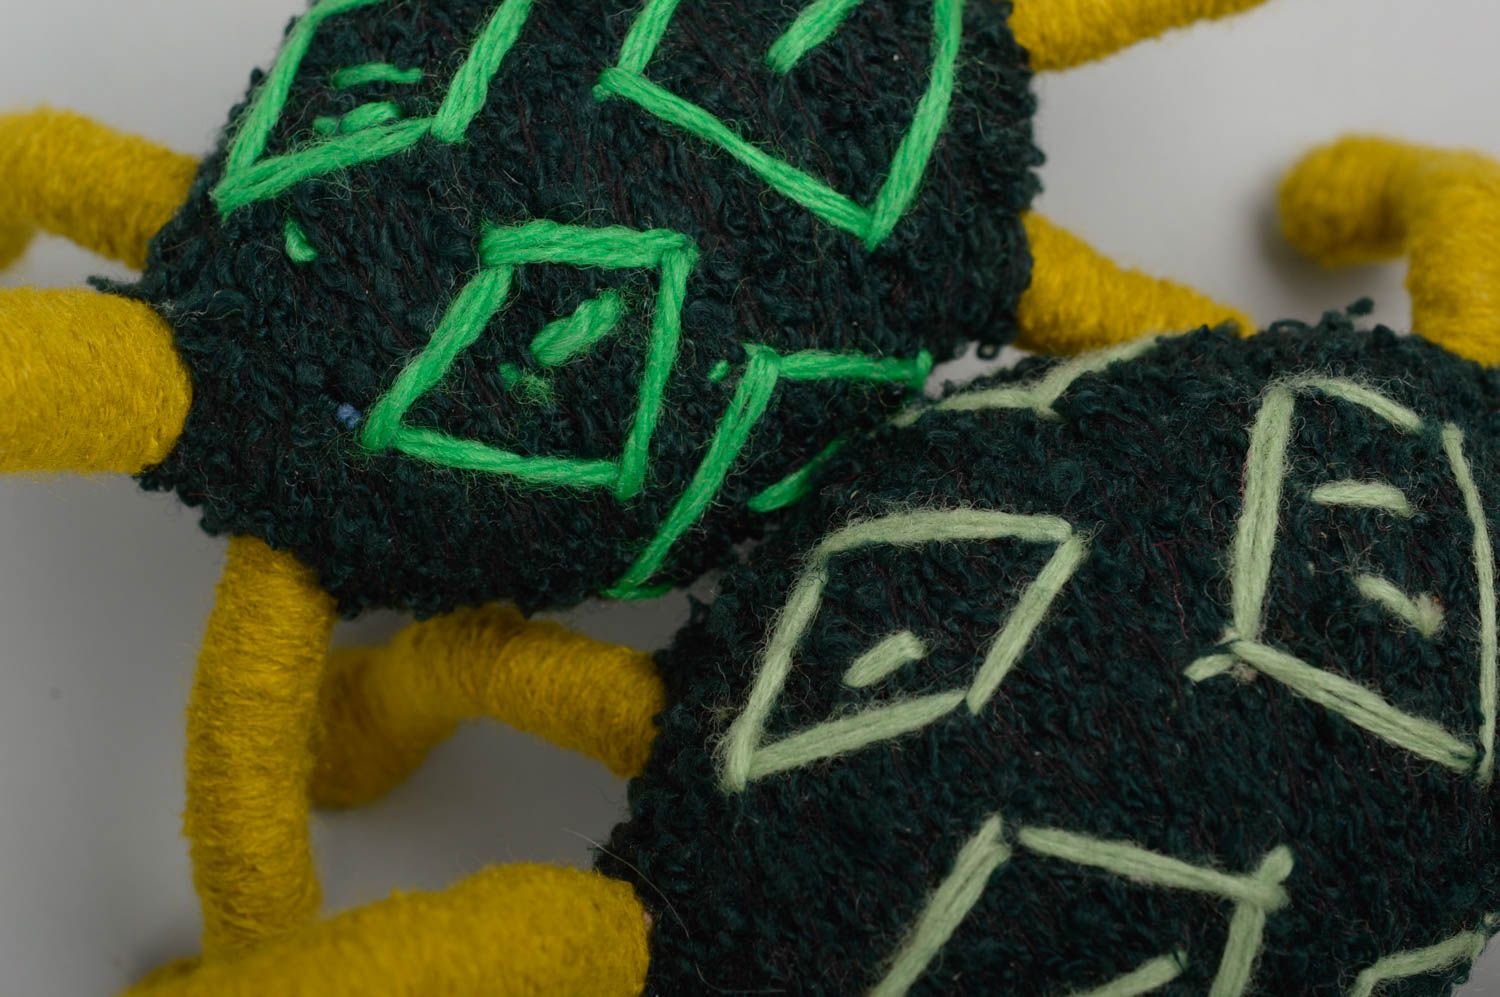 Игрушки черепахи ручной работы игрушки животные авторские игрушки из ниток фото 3